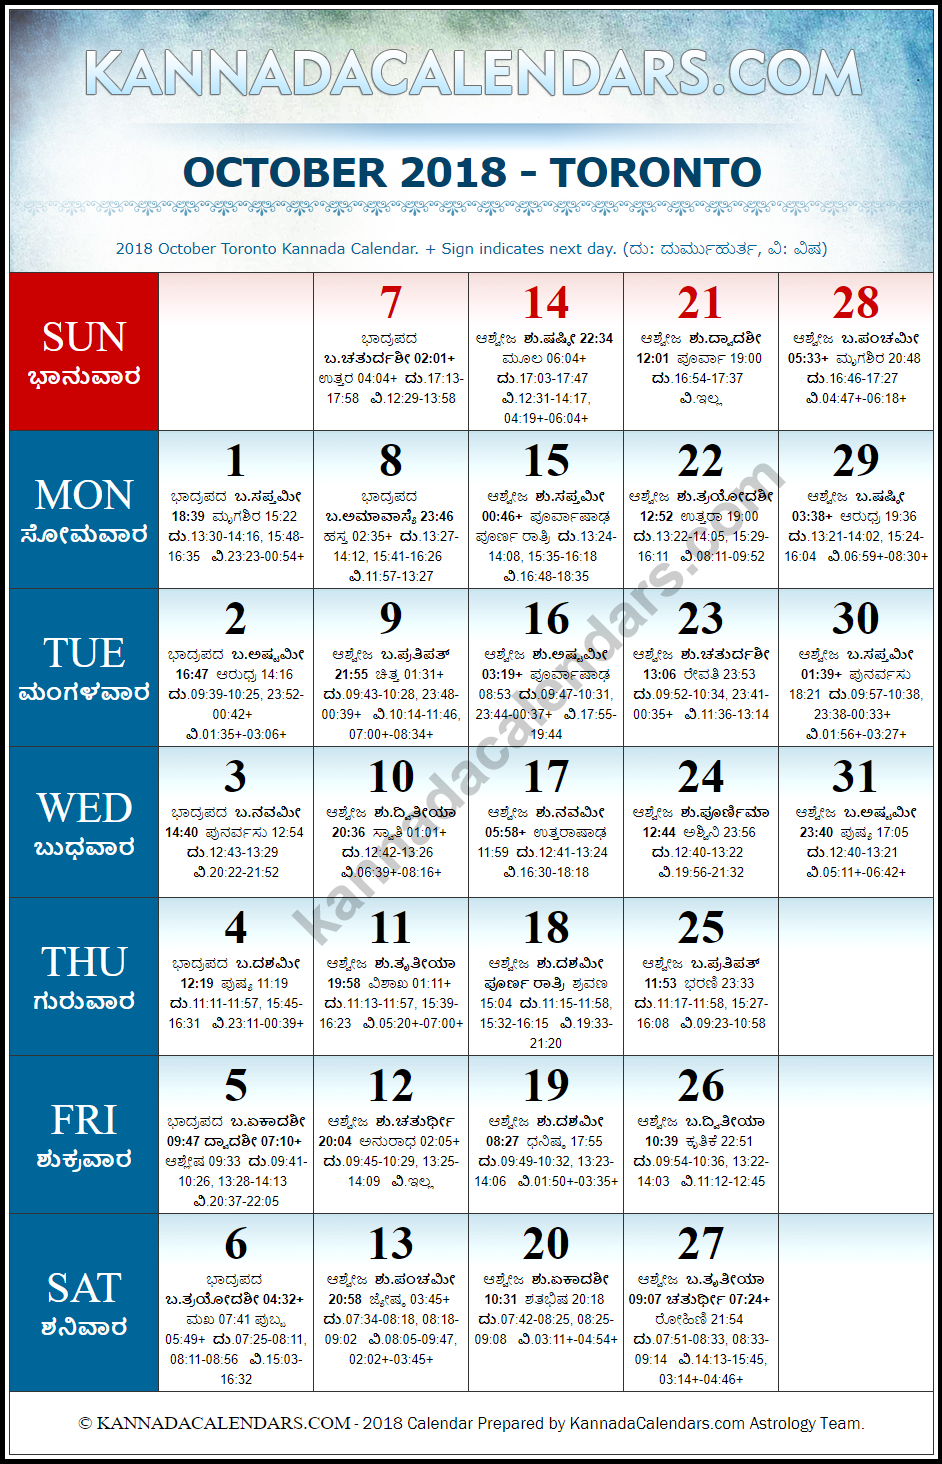 October 2018 Kannada Calendar for Toronto, Canada